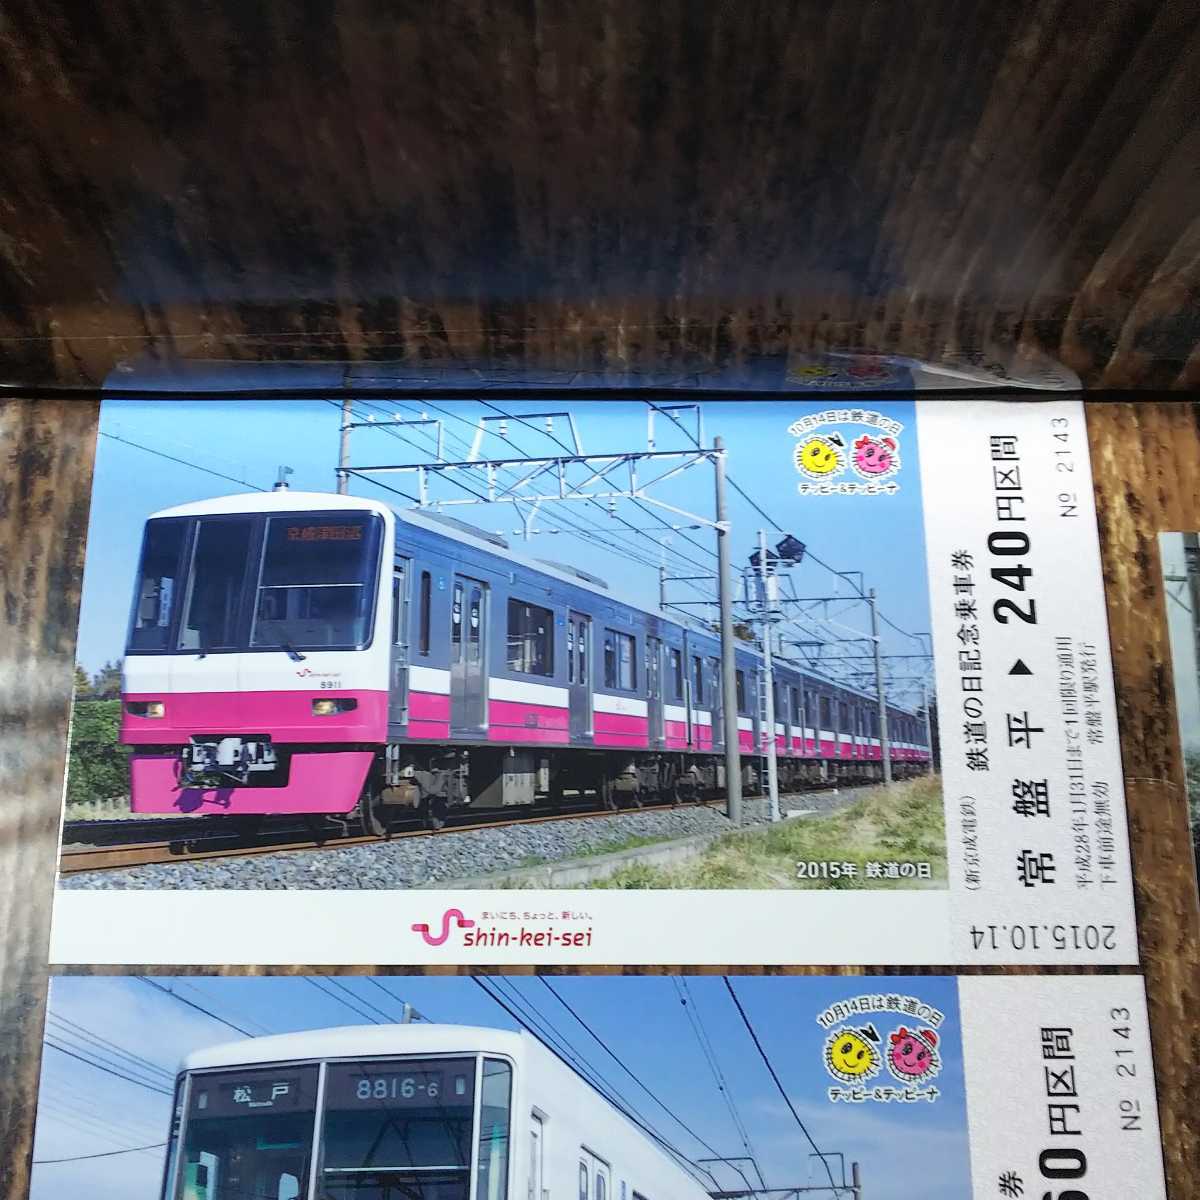 ● 新京成電鉄「鉄道の日 記念乗車券」ポストカード 2015